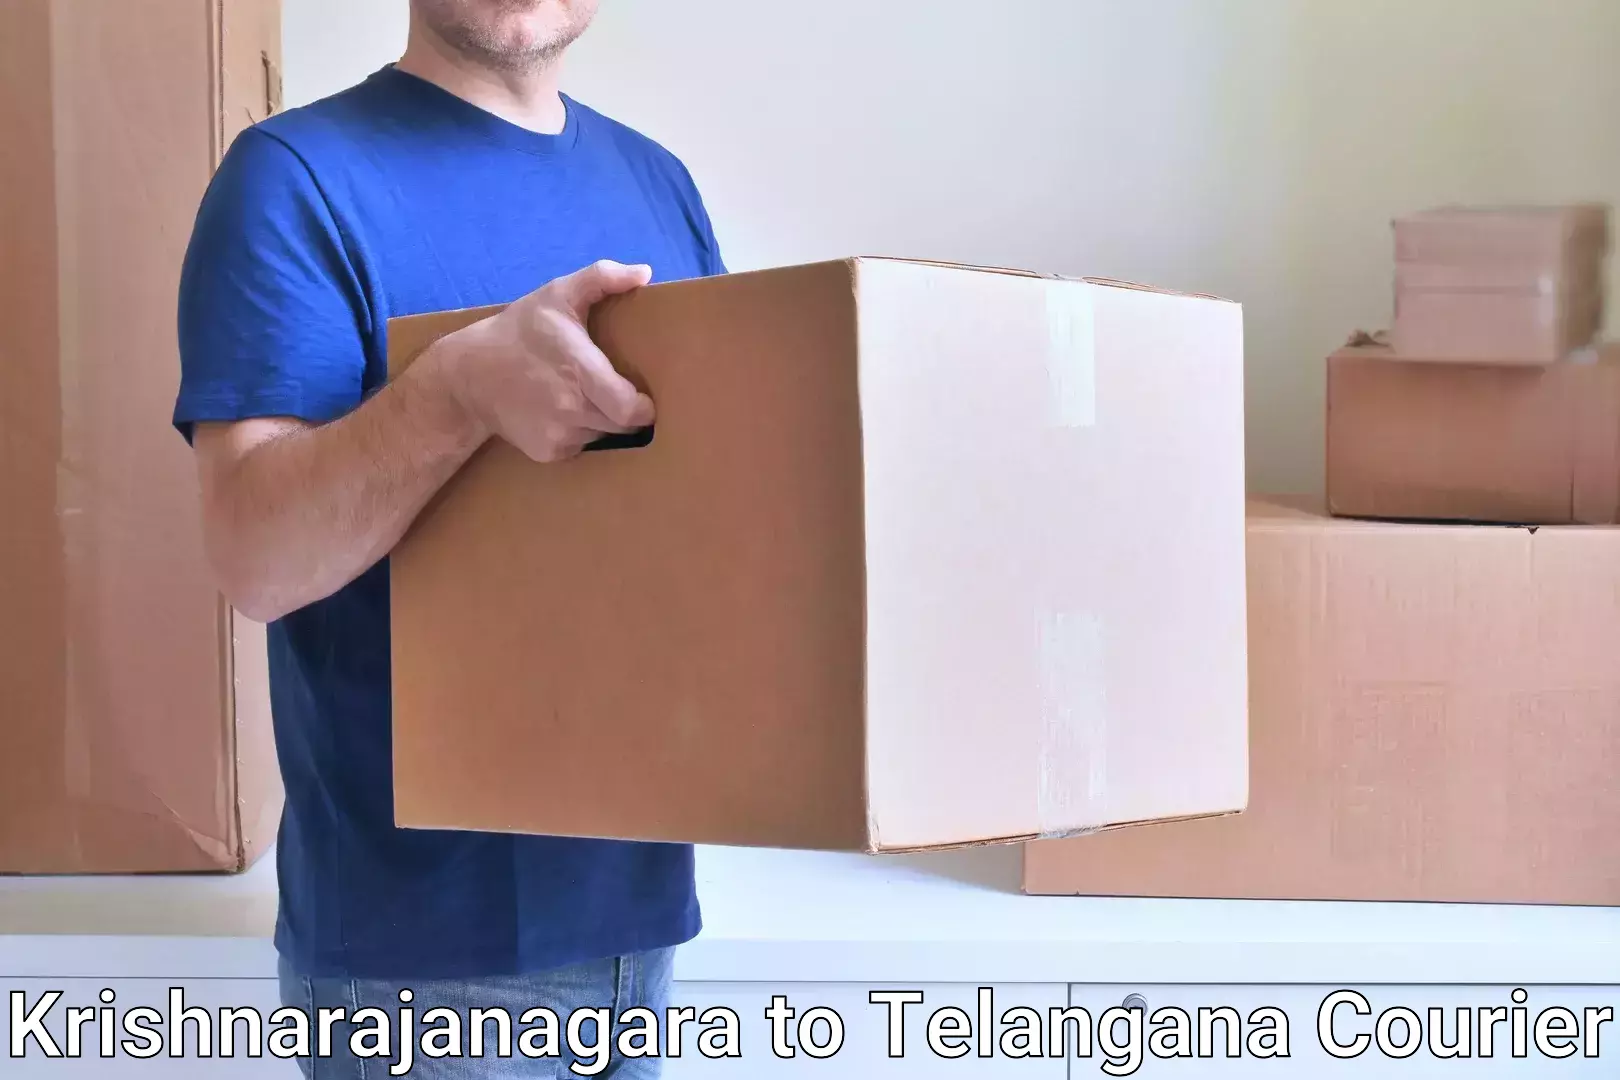 On-time delivery services in Krishnarajanagara to Bejjanki